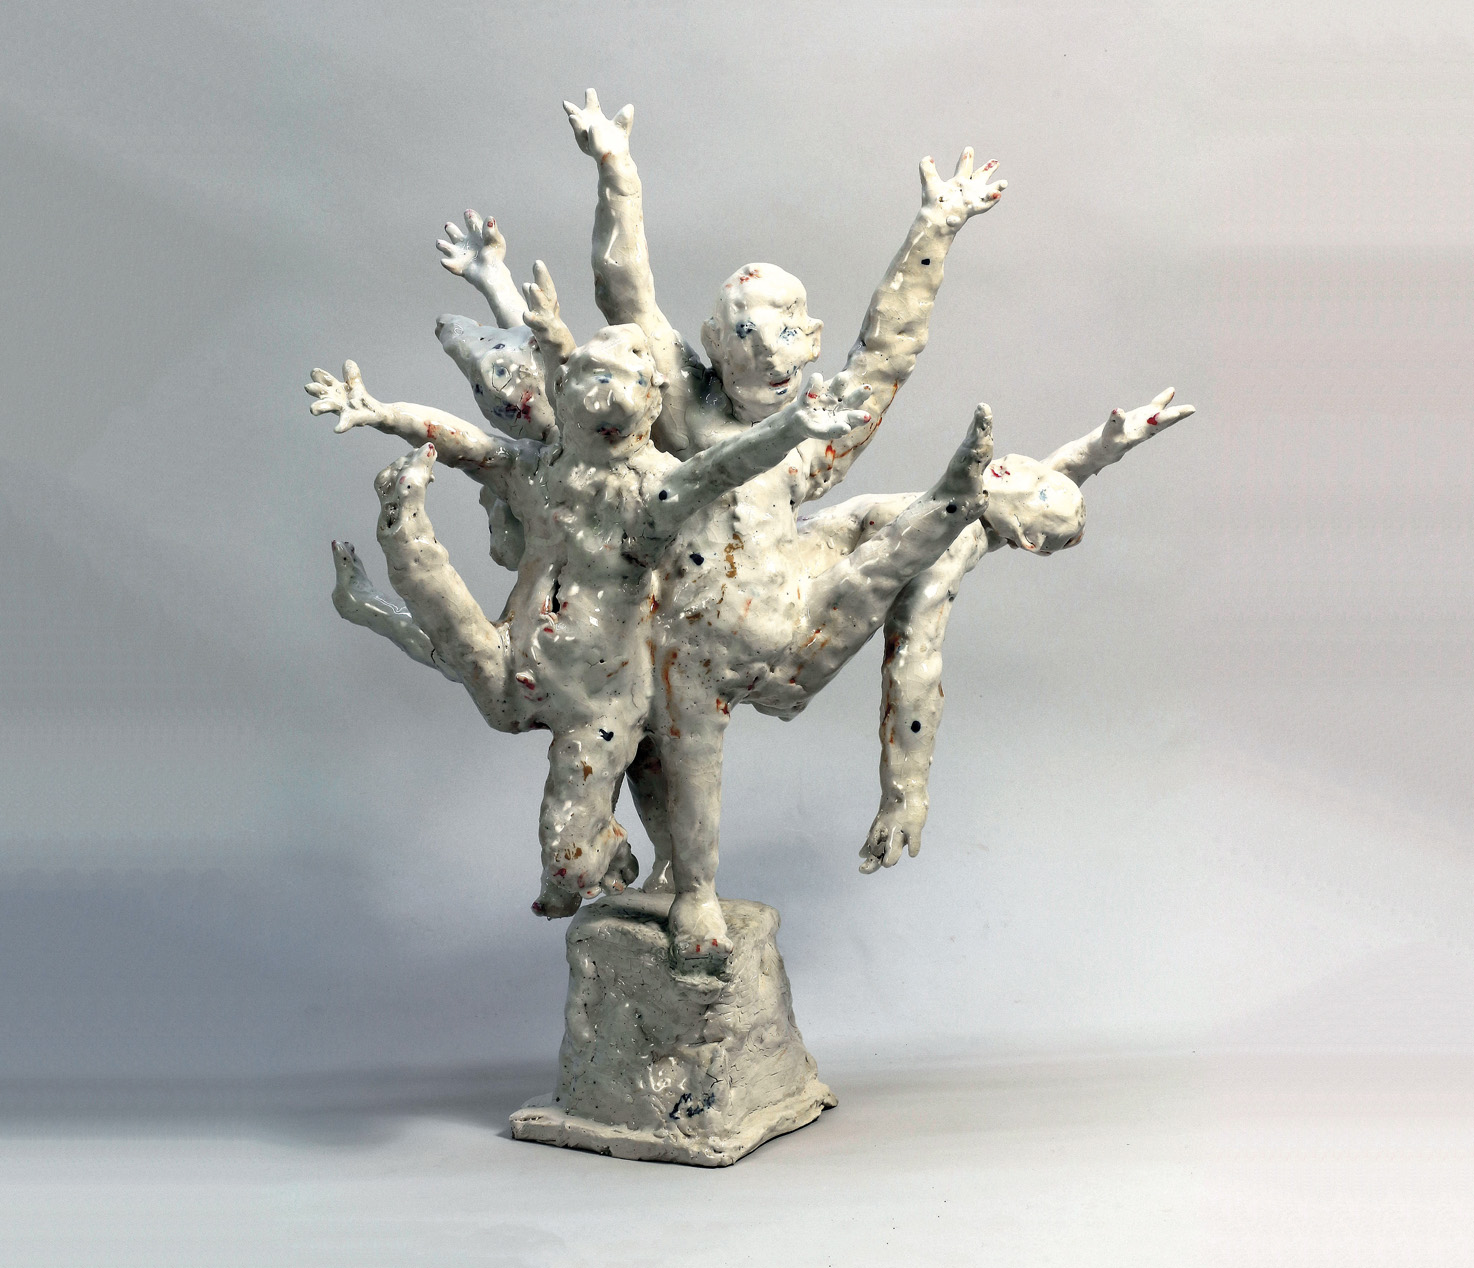 Micheal Flynn - exposition Michael Flynn - galerie de céramique contemporaine - sculpture céramique